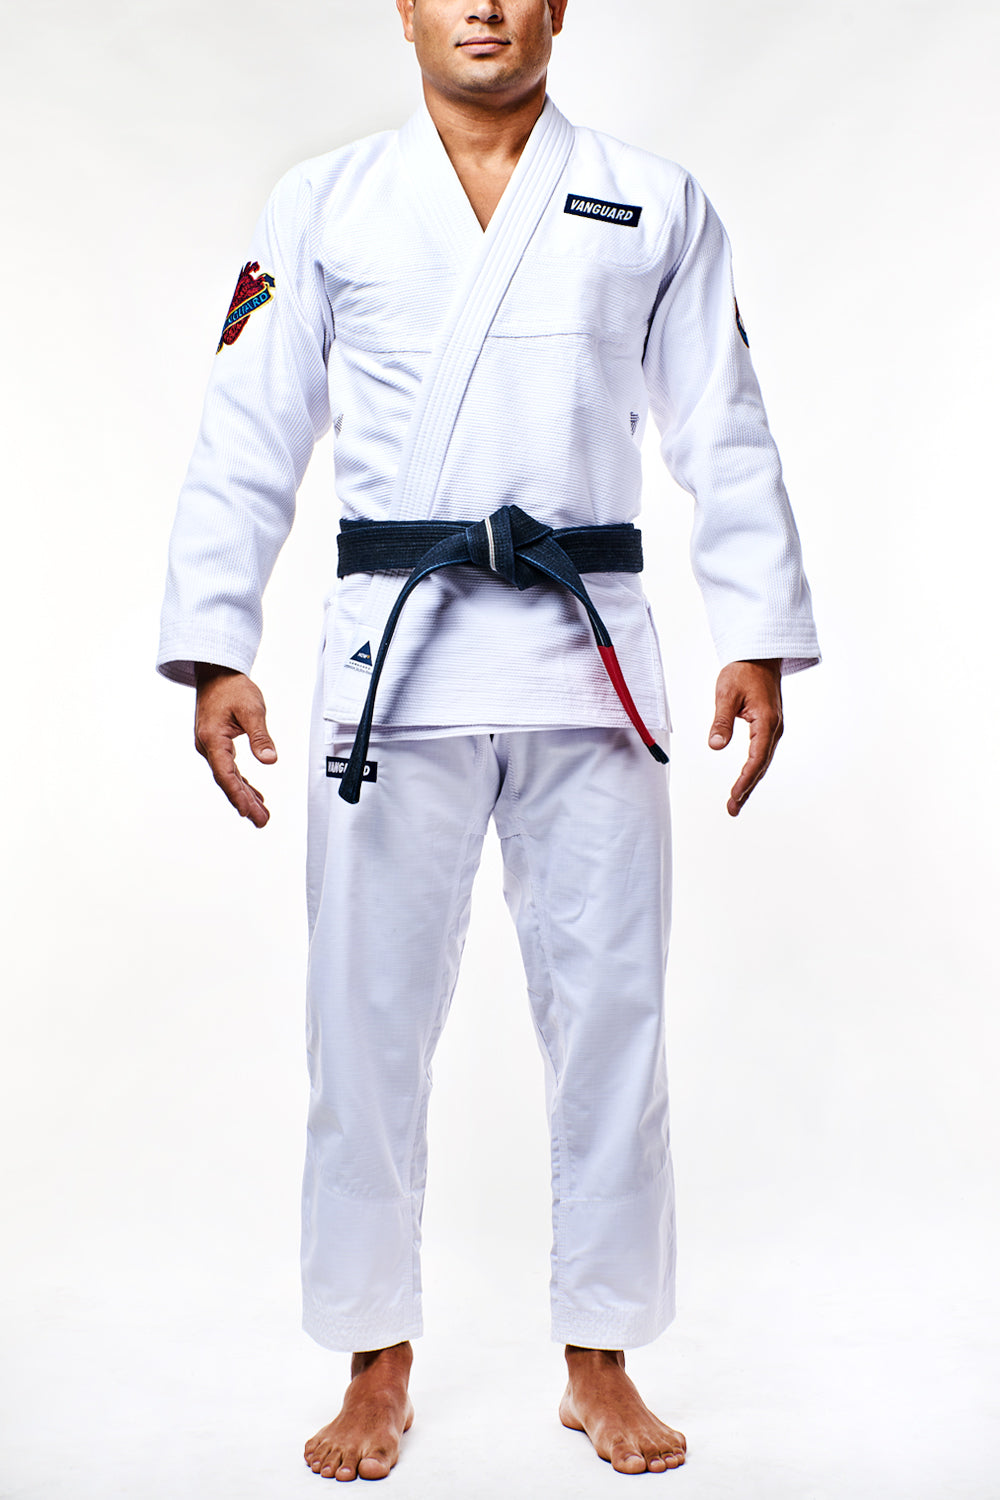 東京イサミ『JJ-450 TORA Jiu-Jitsu-GI』A3サイズ白柔術衣-